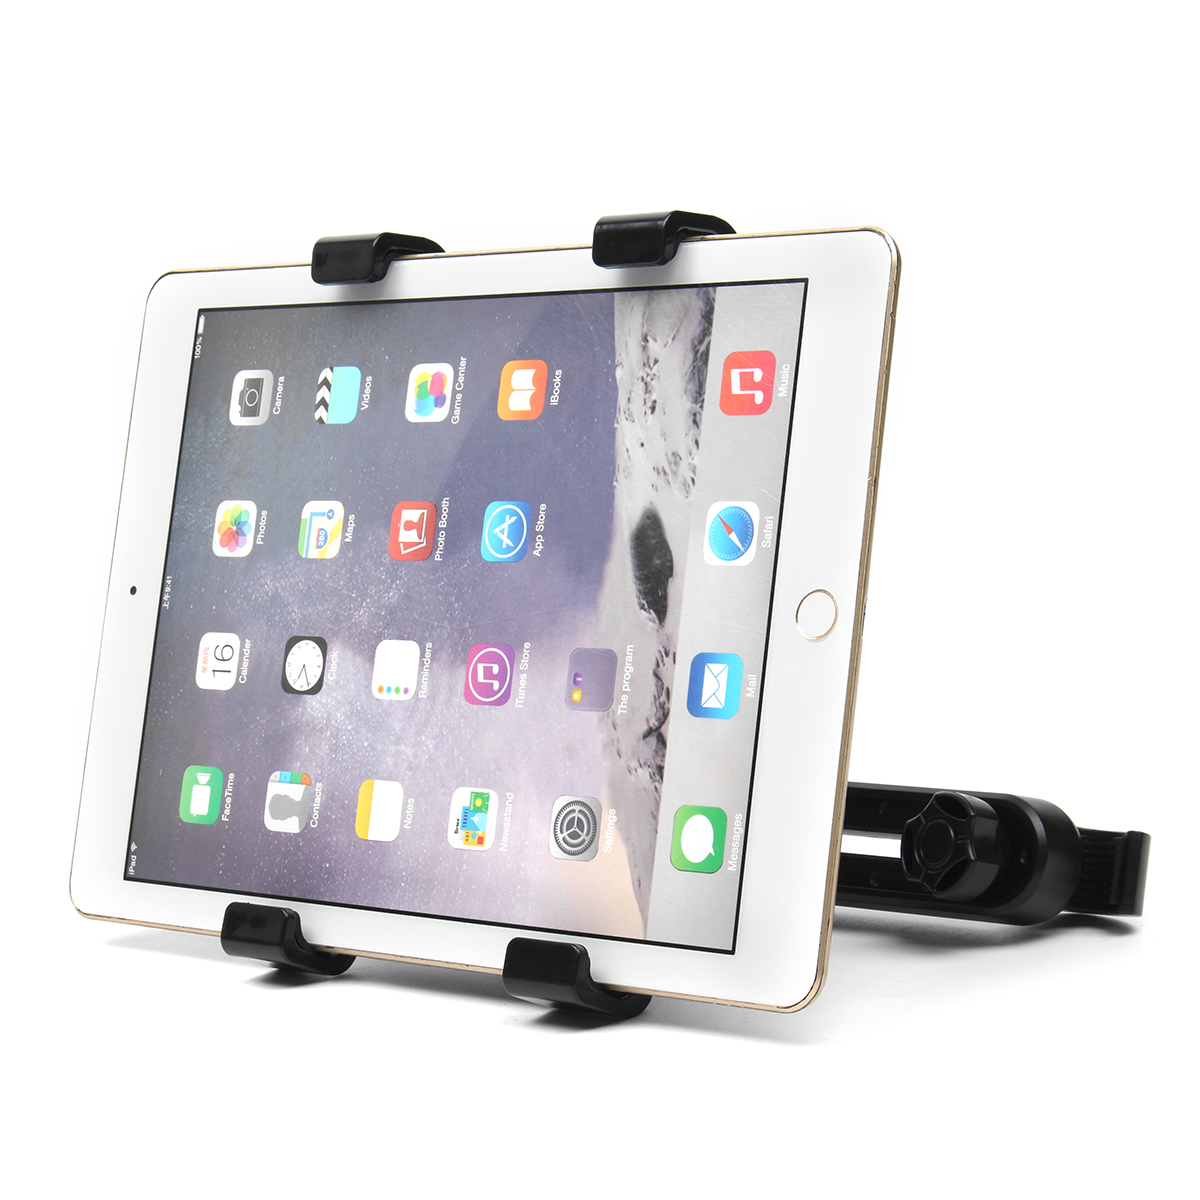 

Авто Подголовник сиденья Стол Stand Holder Для планшета 7-11 дюймов Мини серия iPad Новый iPad 9,7 дюймов 2018